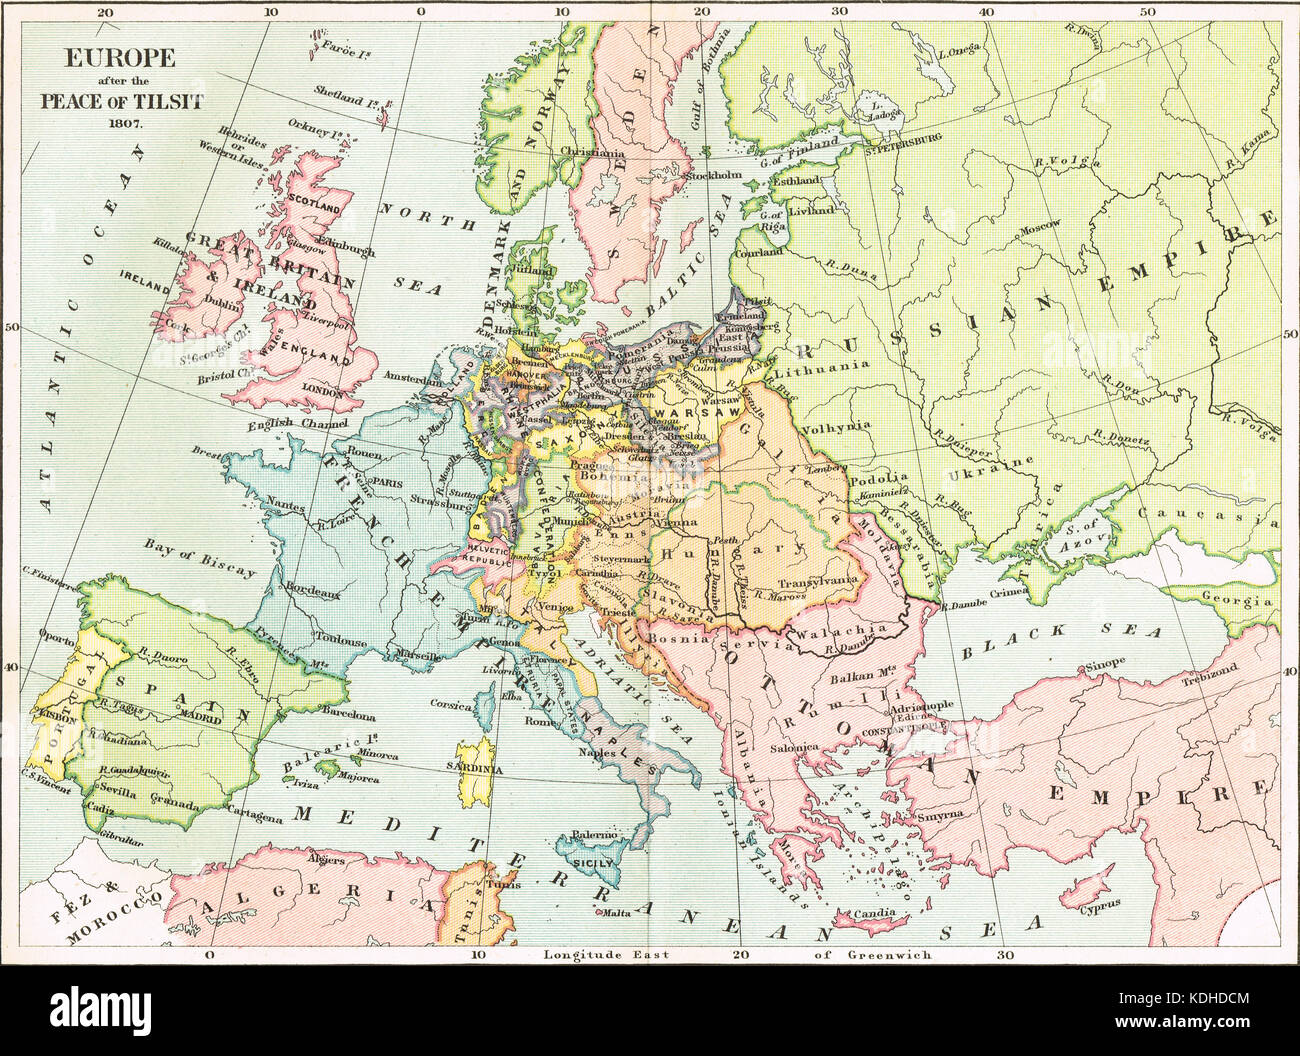 Karte von Europa nach dem Frieden von Tilsit 1807 Stockfoto